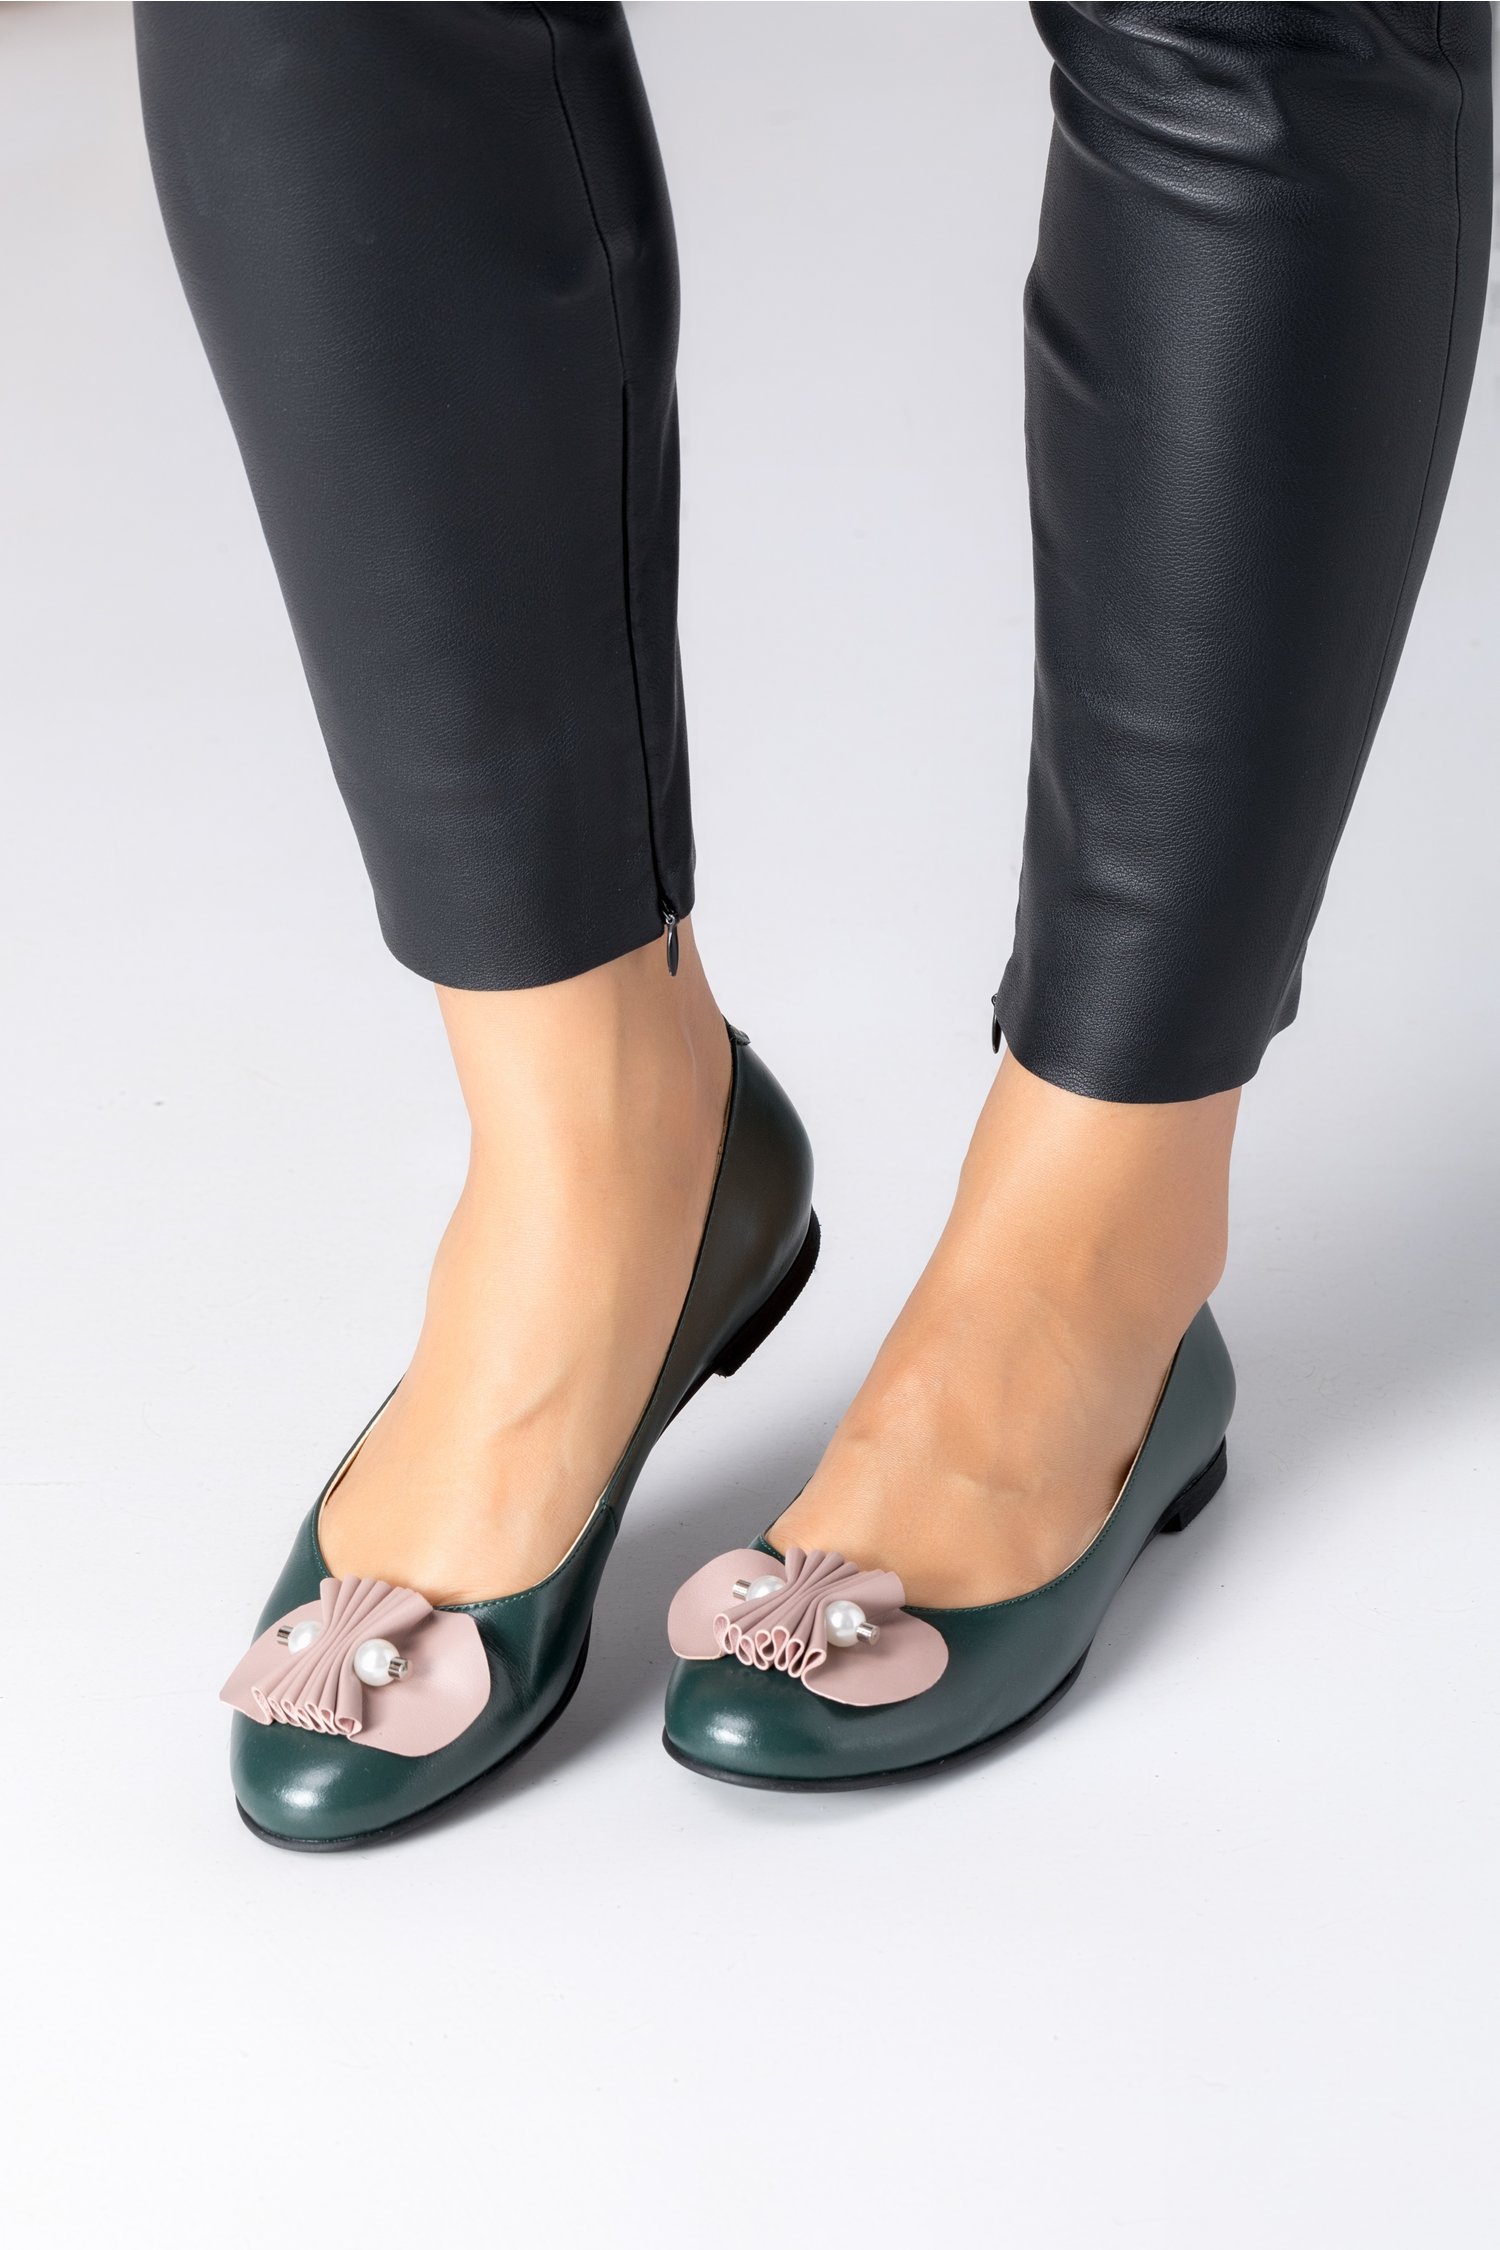 Pantofi dama verzi cu talpa joasa si aplicatie bej cu perlute